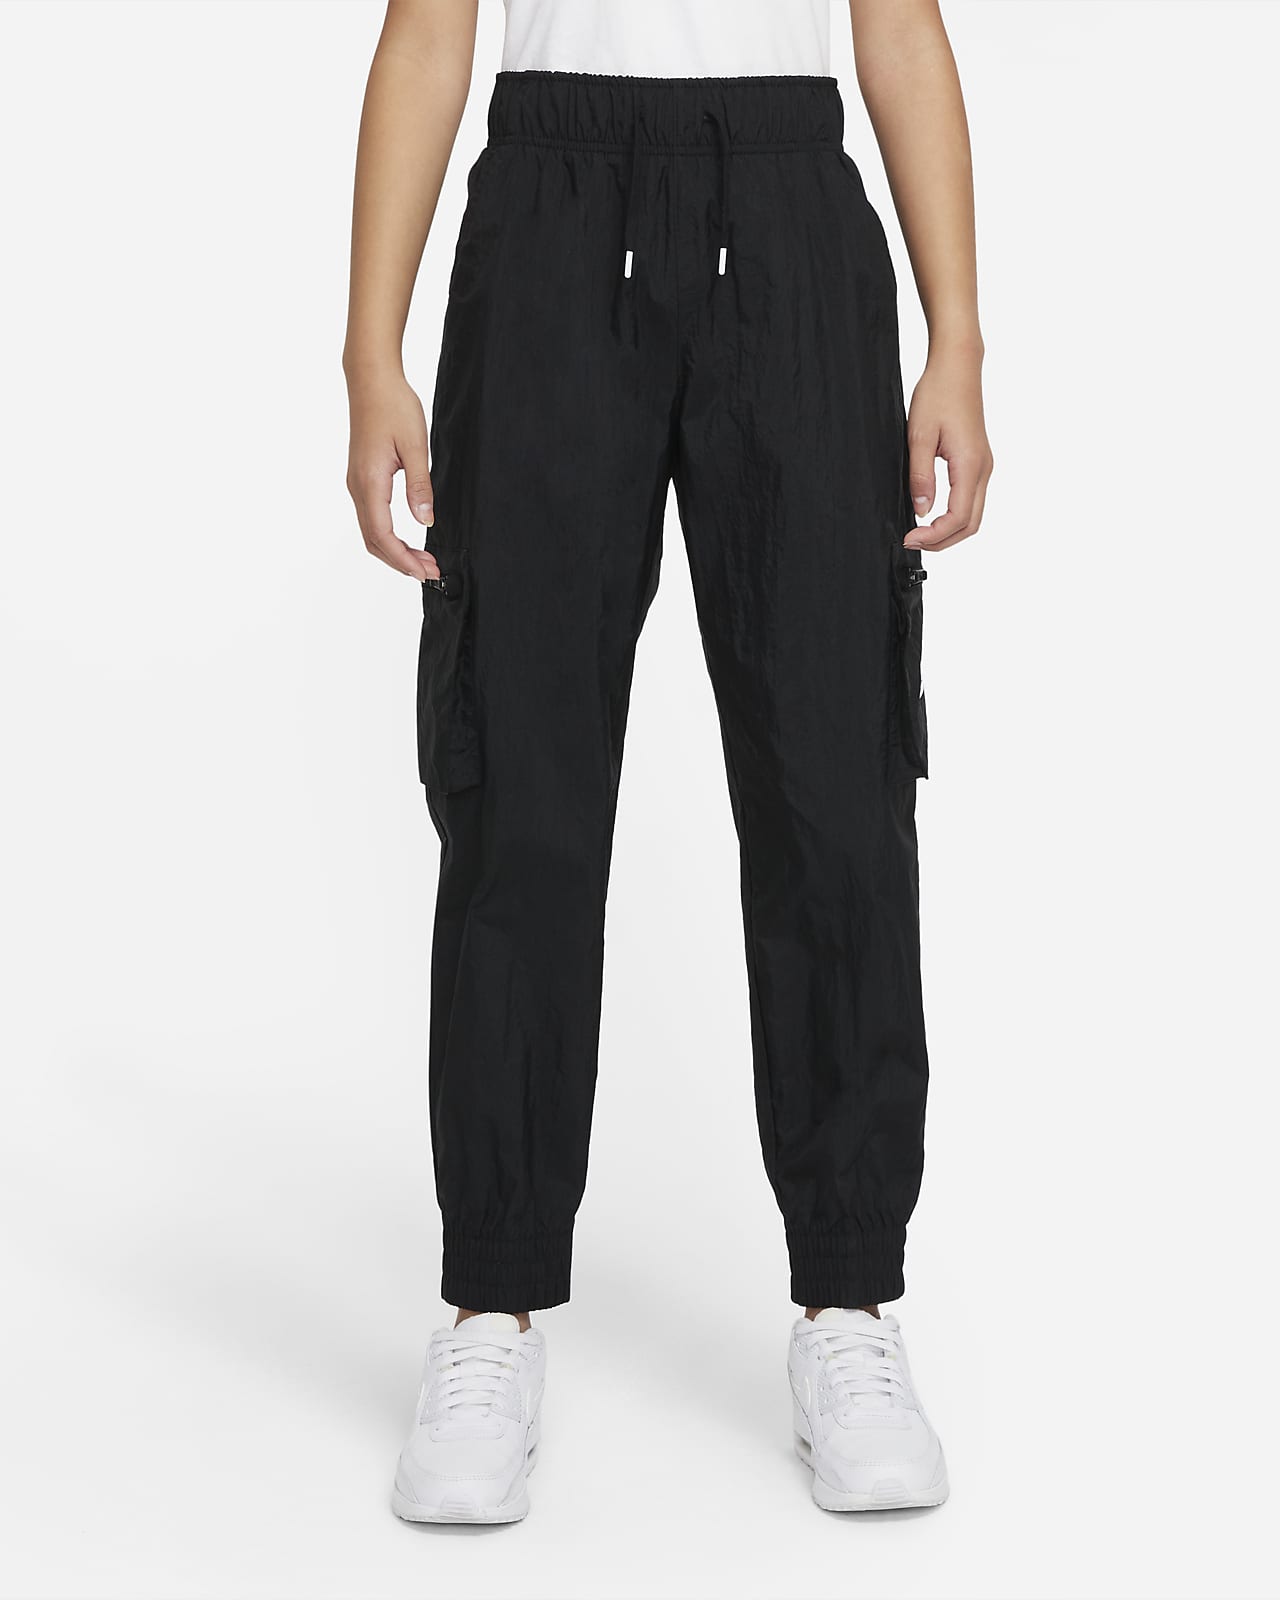 Pantaloni cargo in tessuto Nike Sportswear - Ragazza